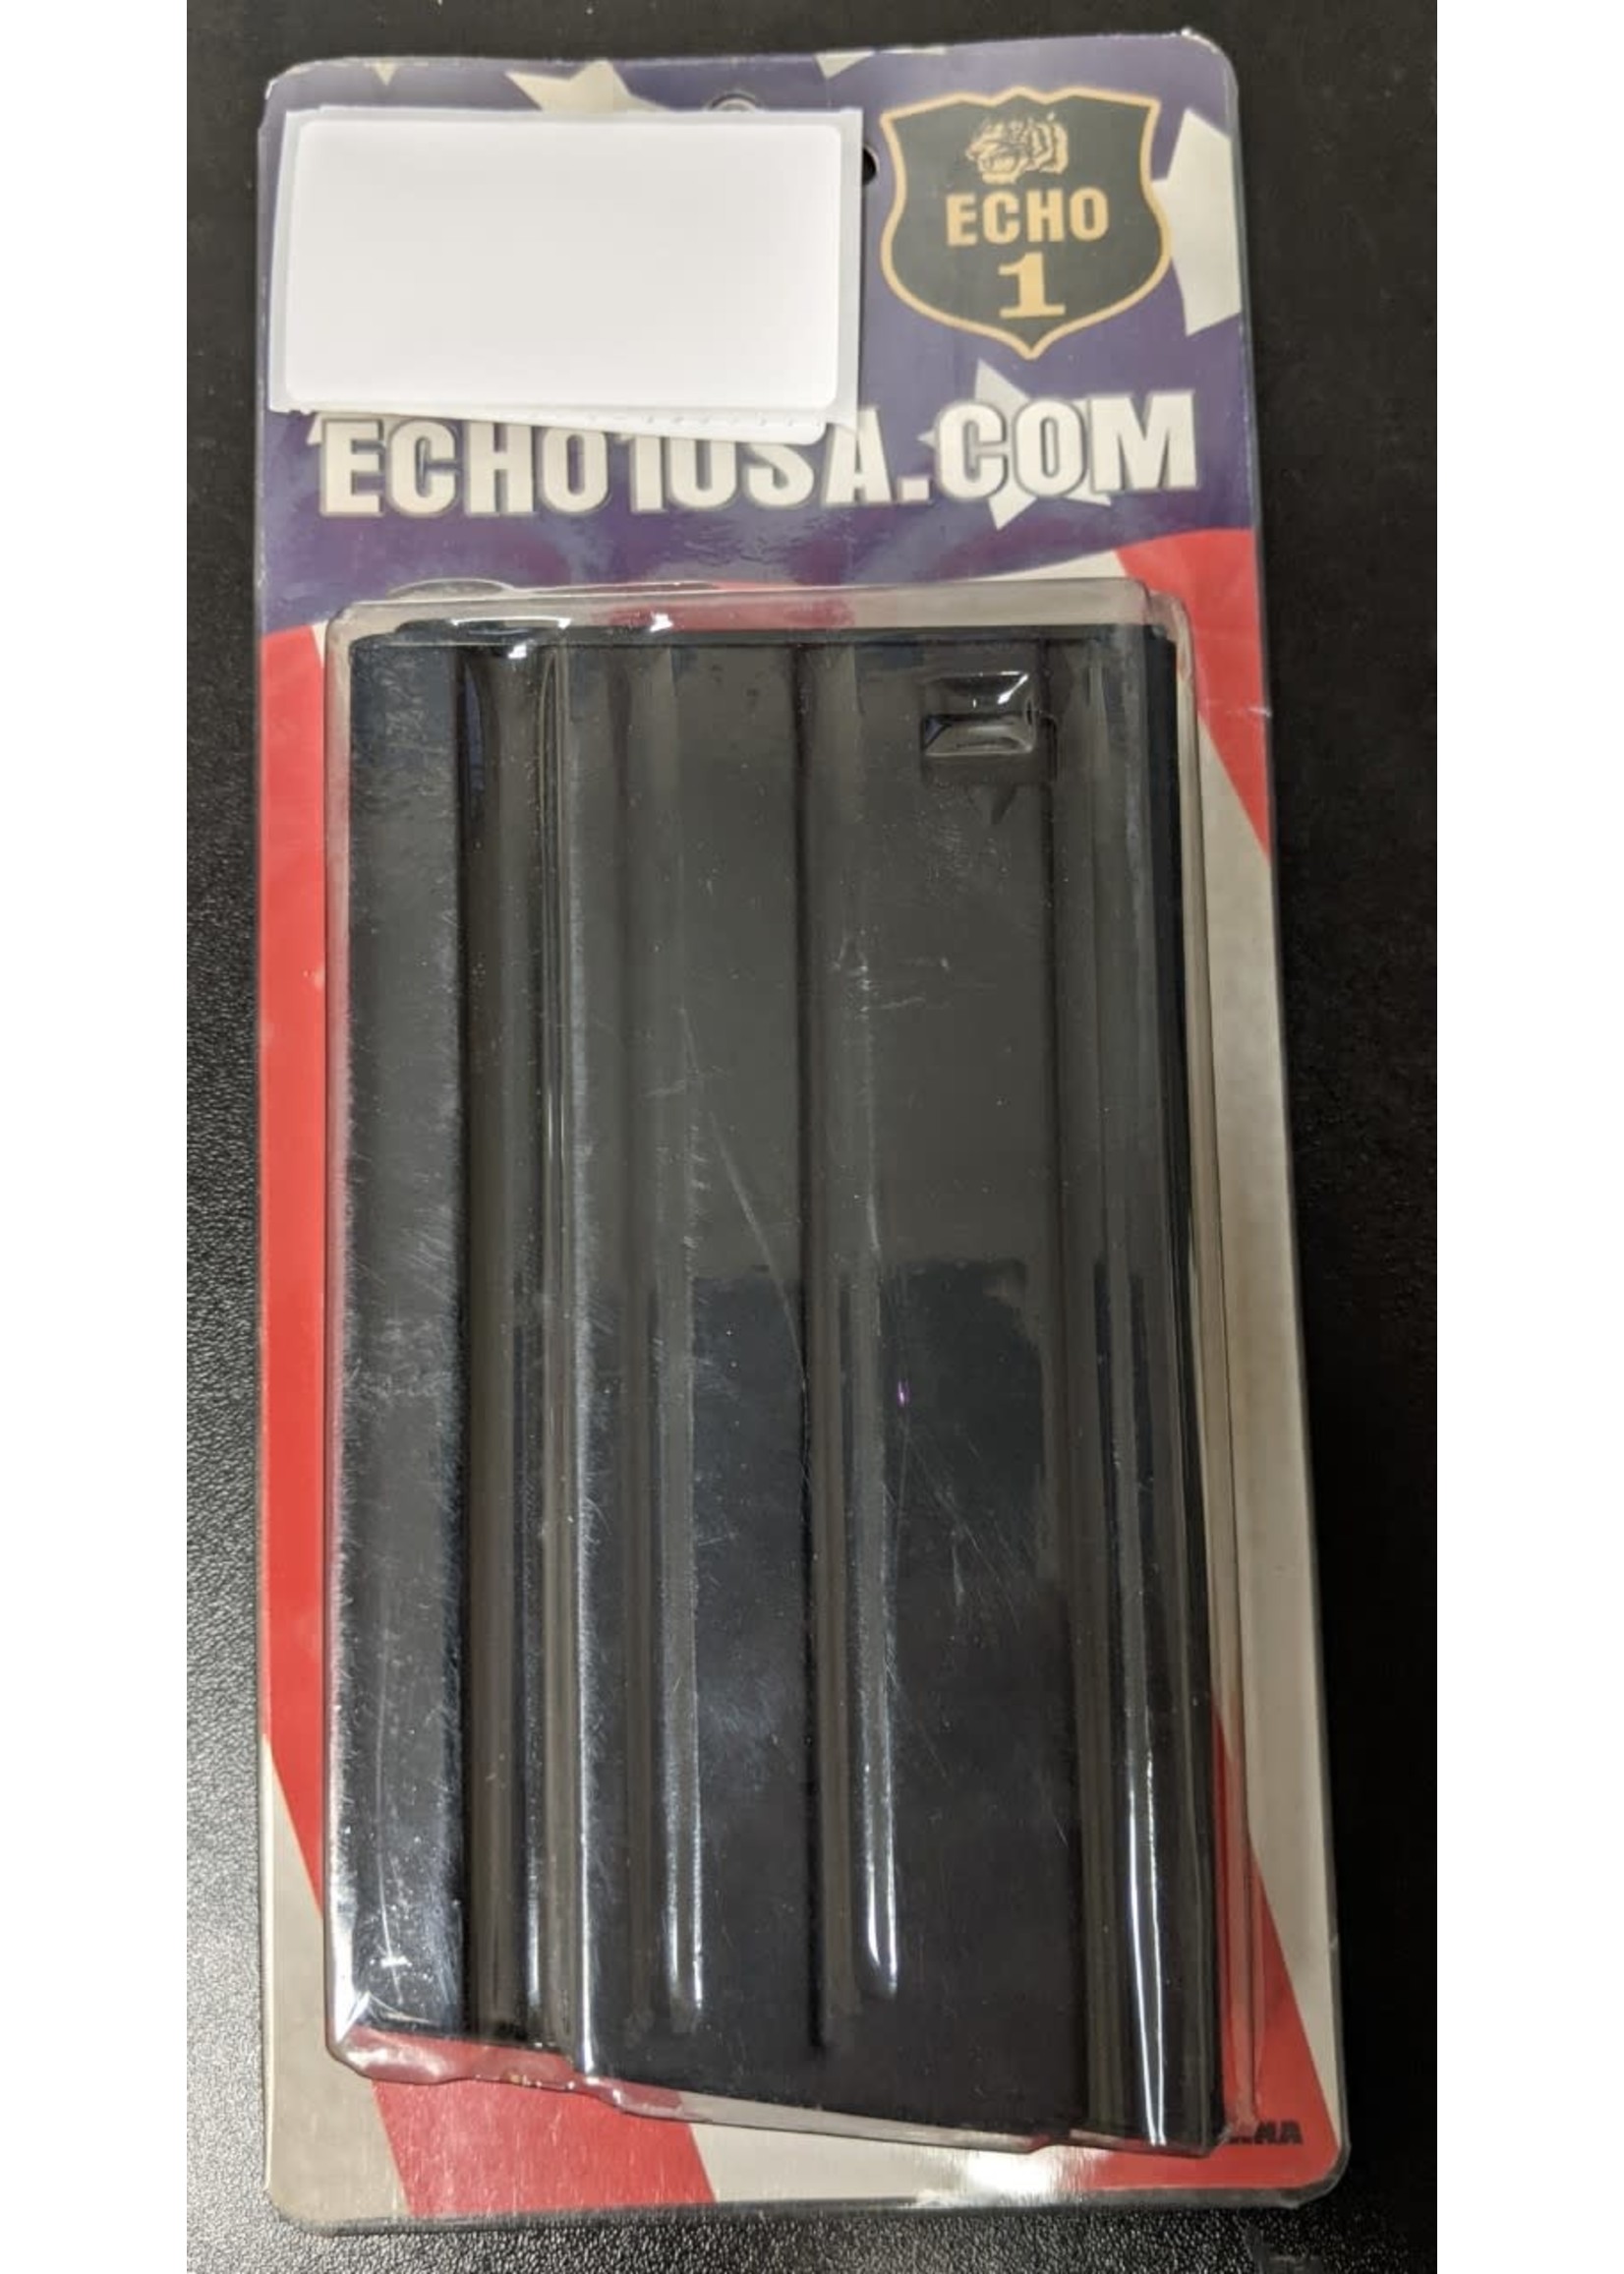 ECHO 1 SCAR-H 500RD MAG